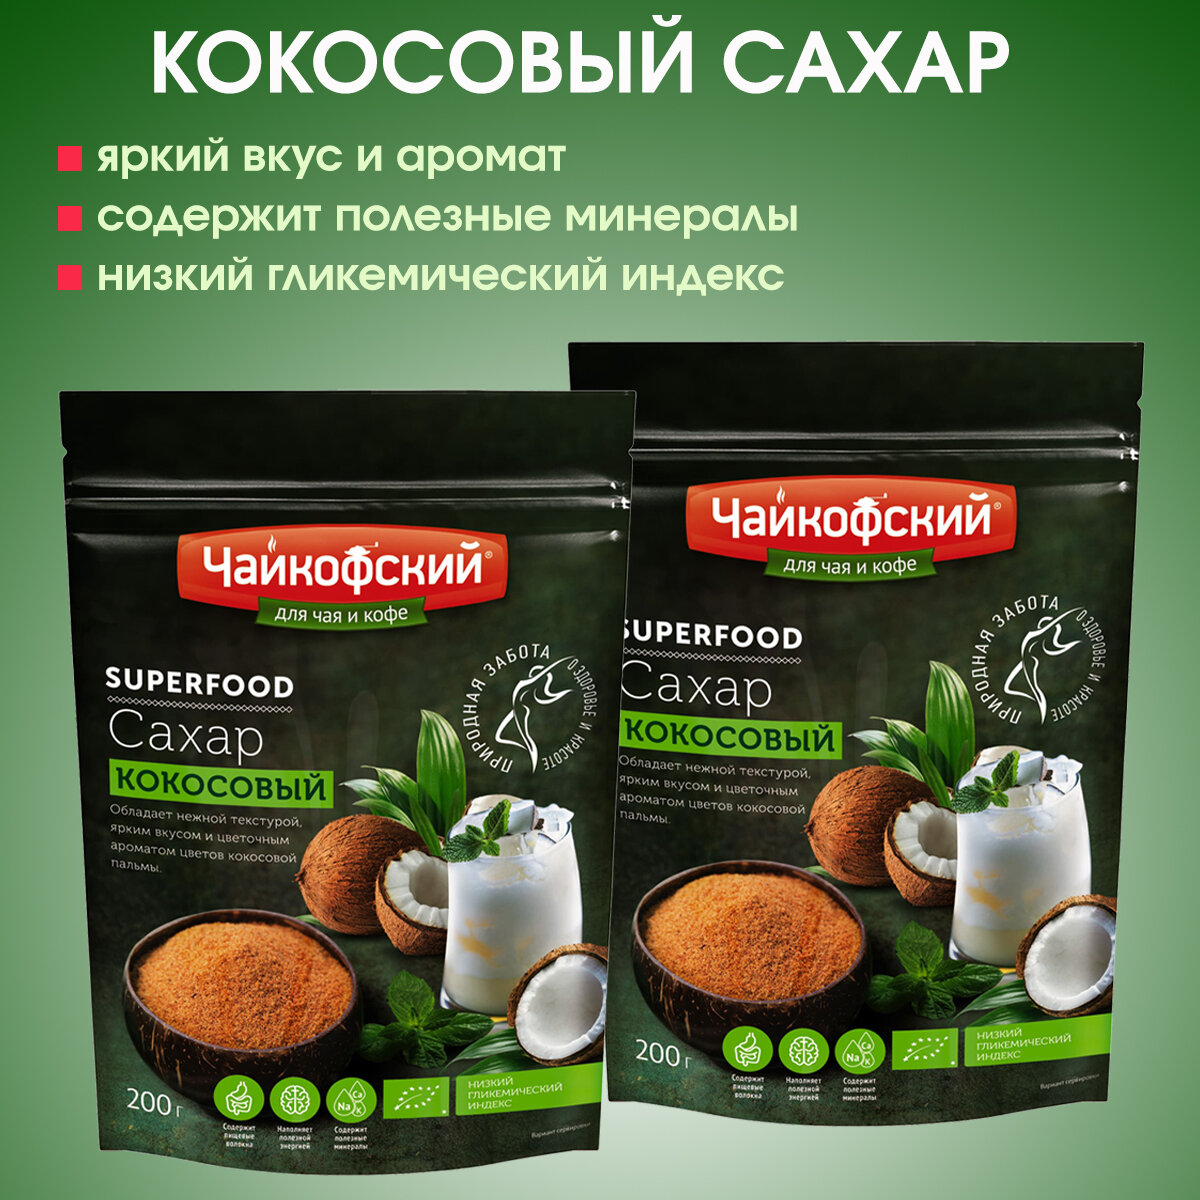 Сахар - песок кокосовый коричневый "Чайкофский", 2 упаковки по 200г.